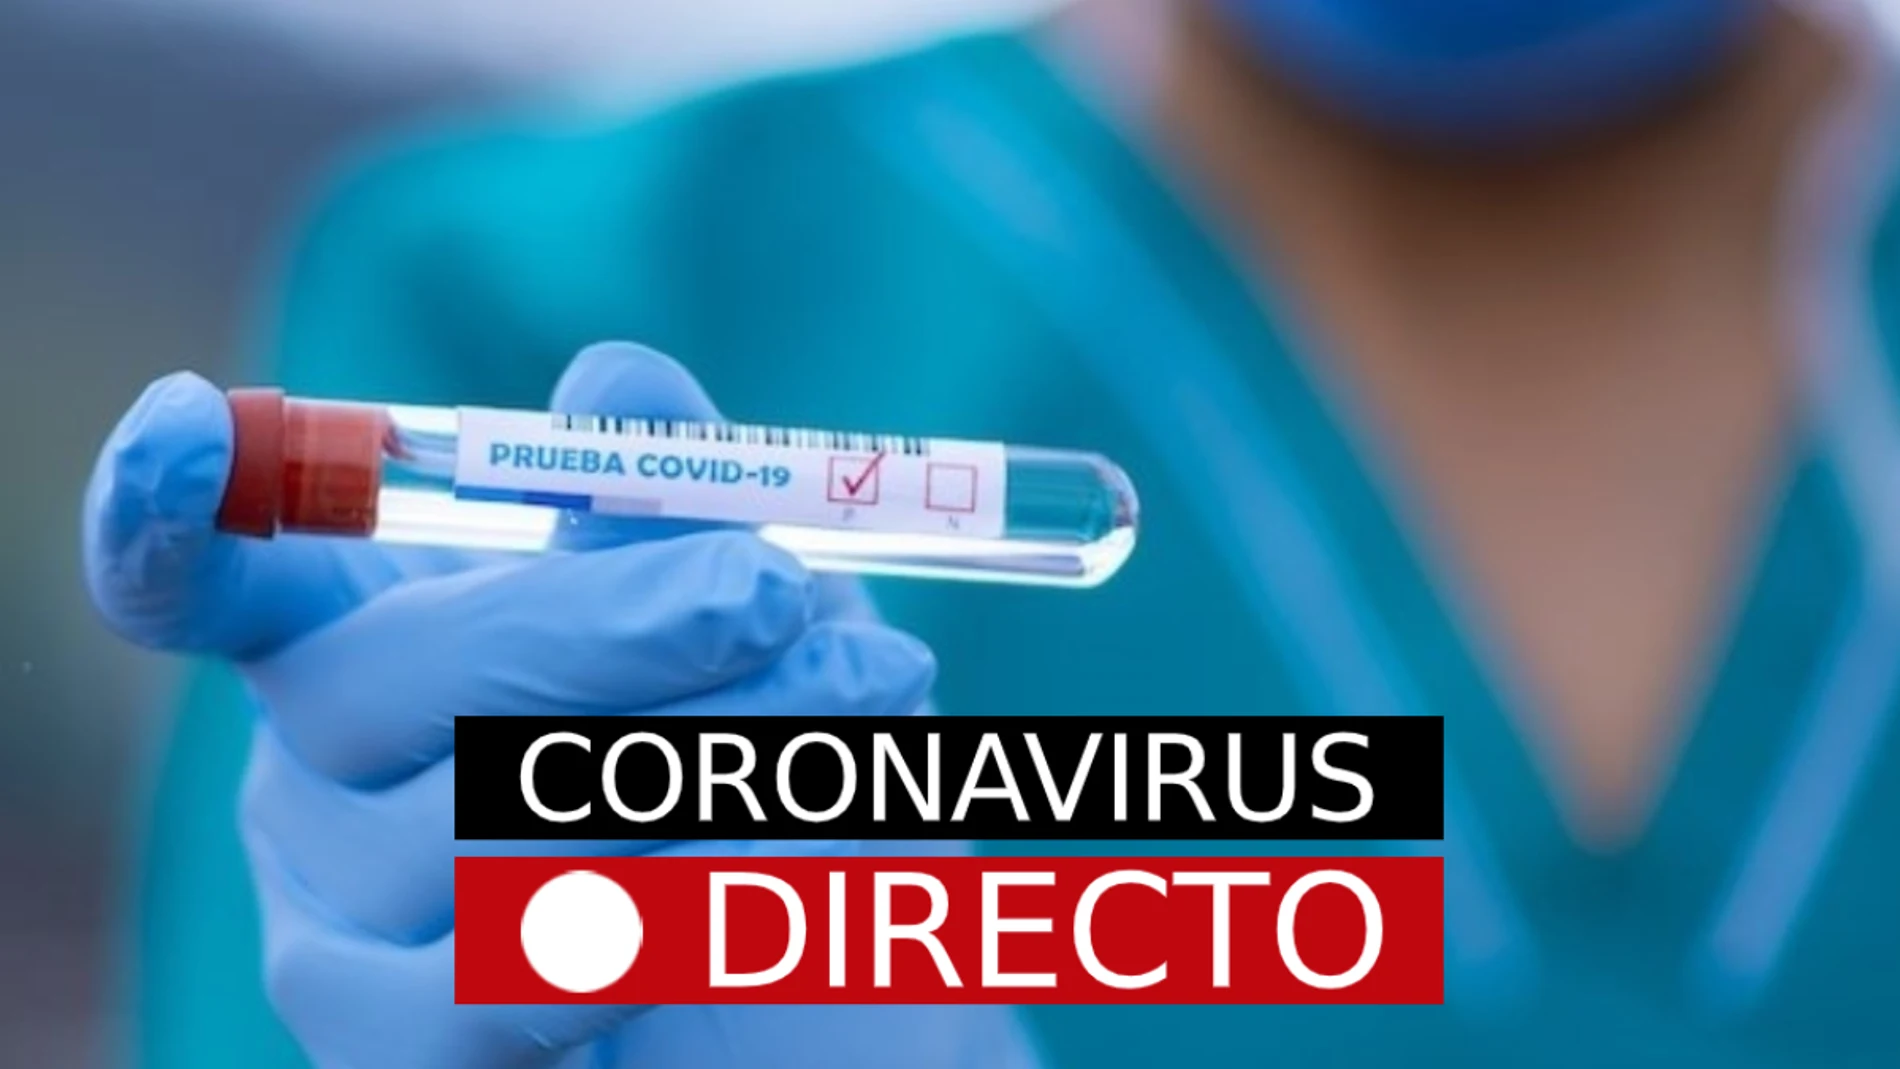 La última hora del coronavirus y de la nueva normalidad, en laSexta.com